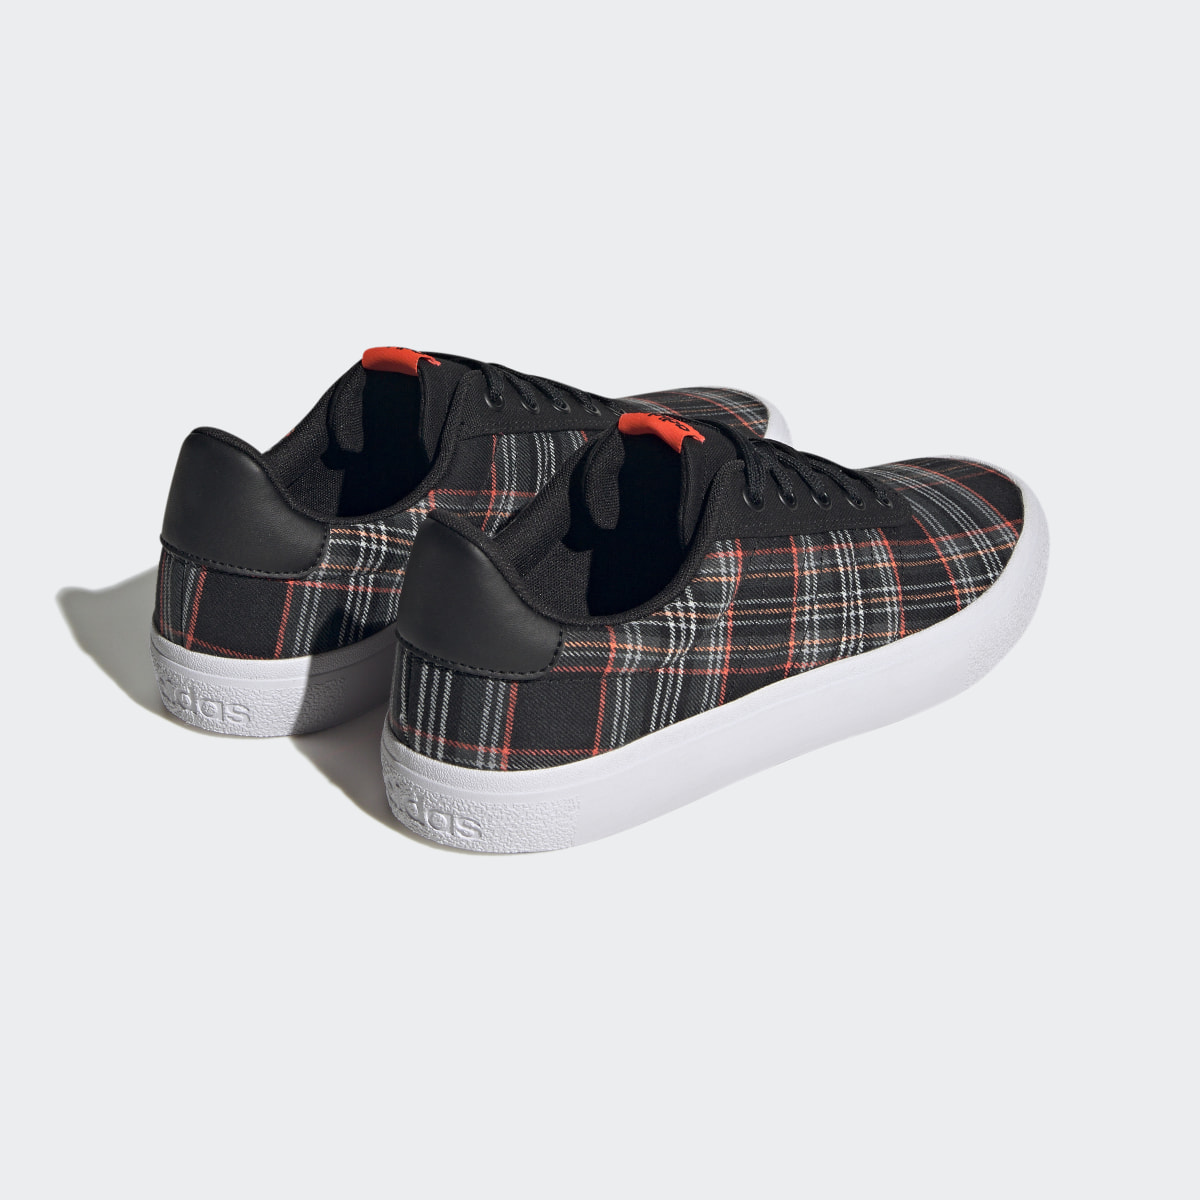 Adidas Vulc Raid3r Lifestyle Skateboarding 3-Stripes Branding Shoes. 6